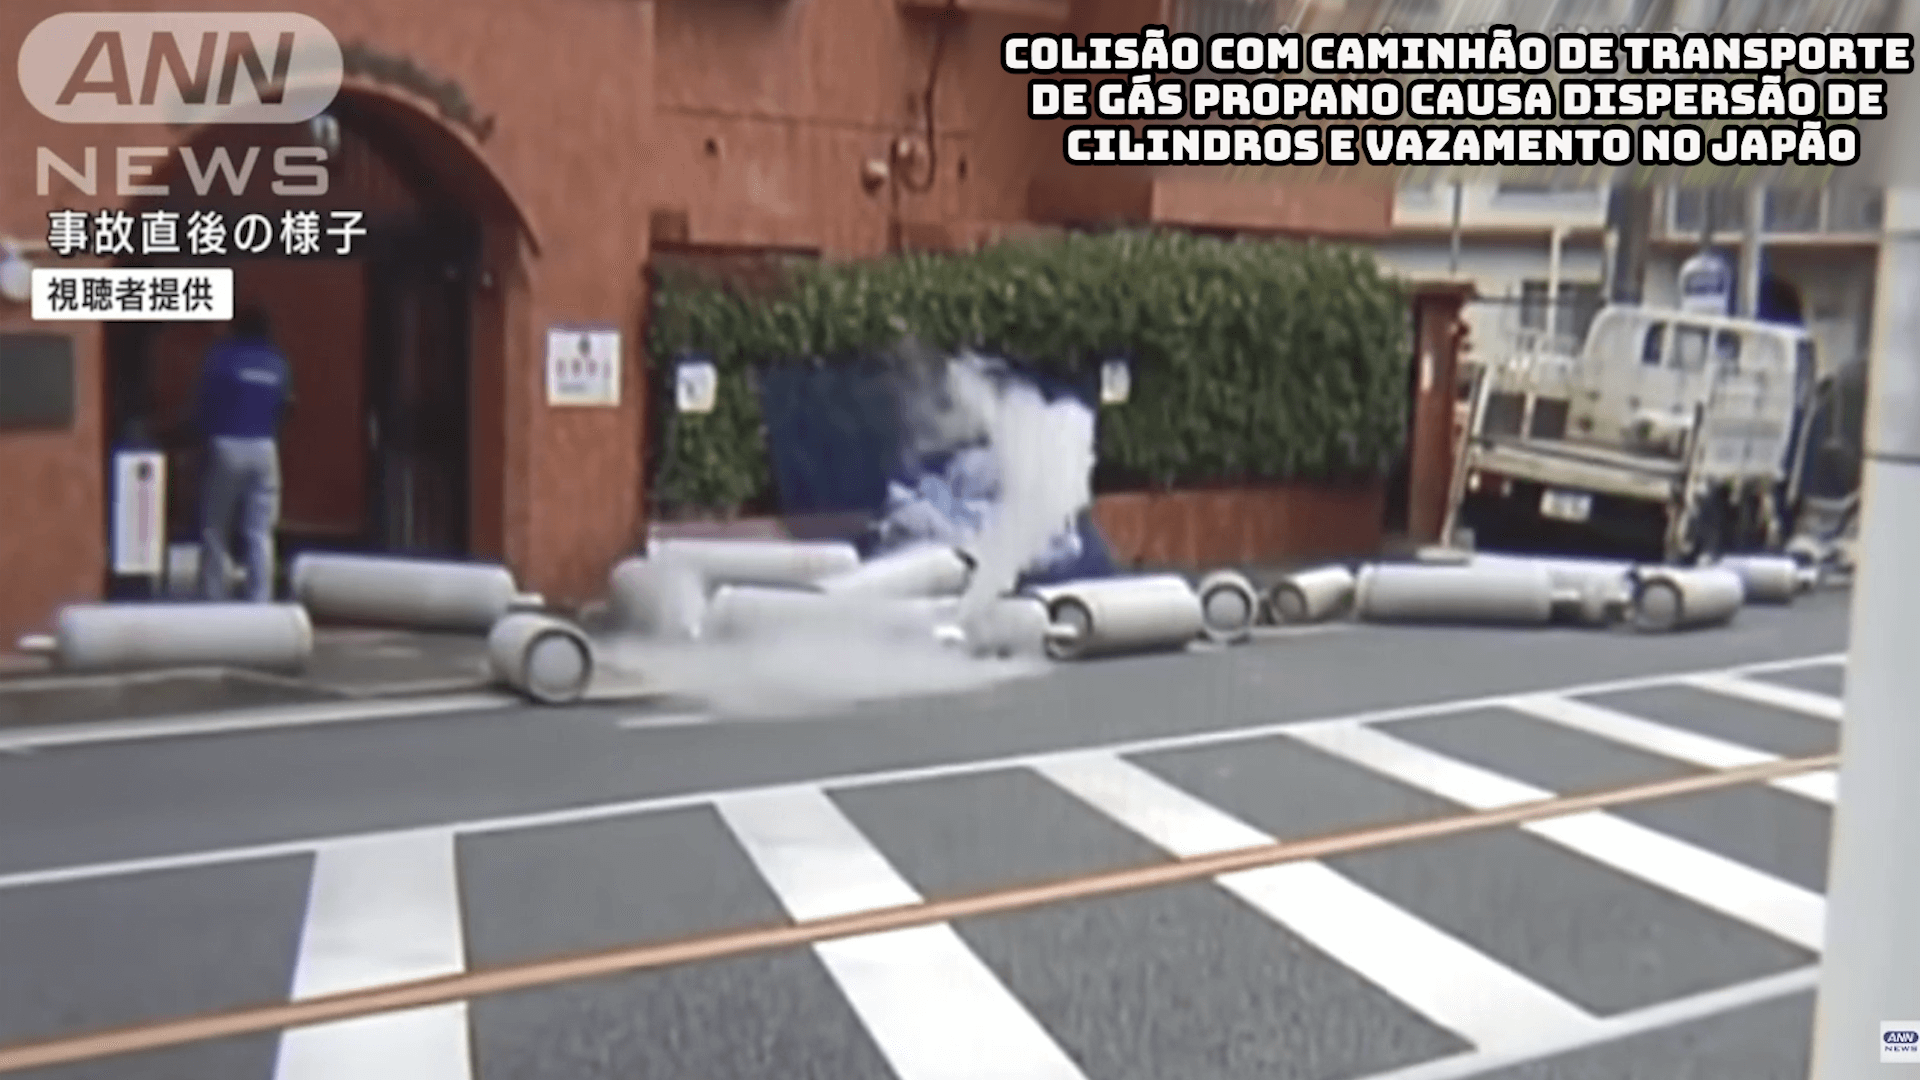 Colisão com caminhão de transporte de gás propano causa dispersão de cilindros e vazamento no Japão 